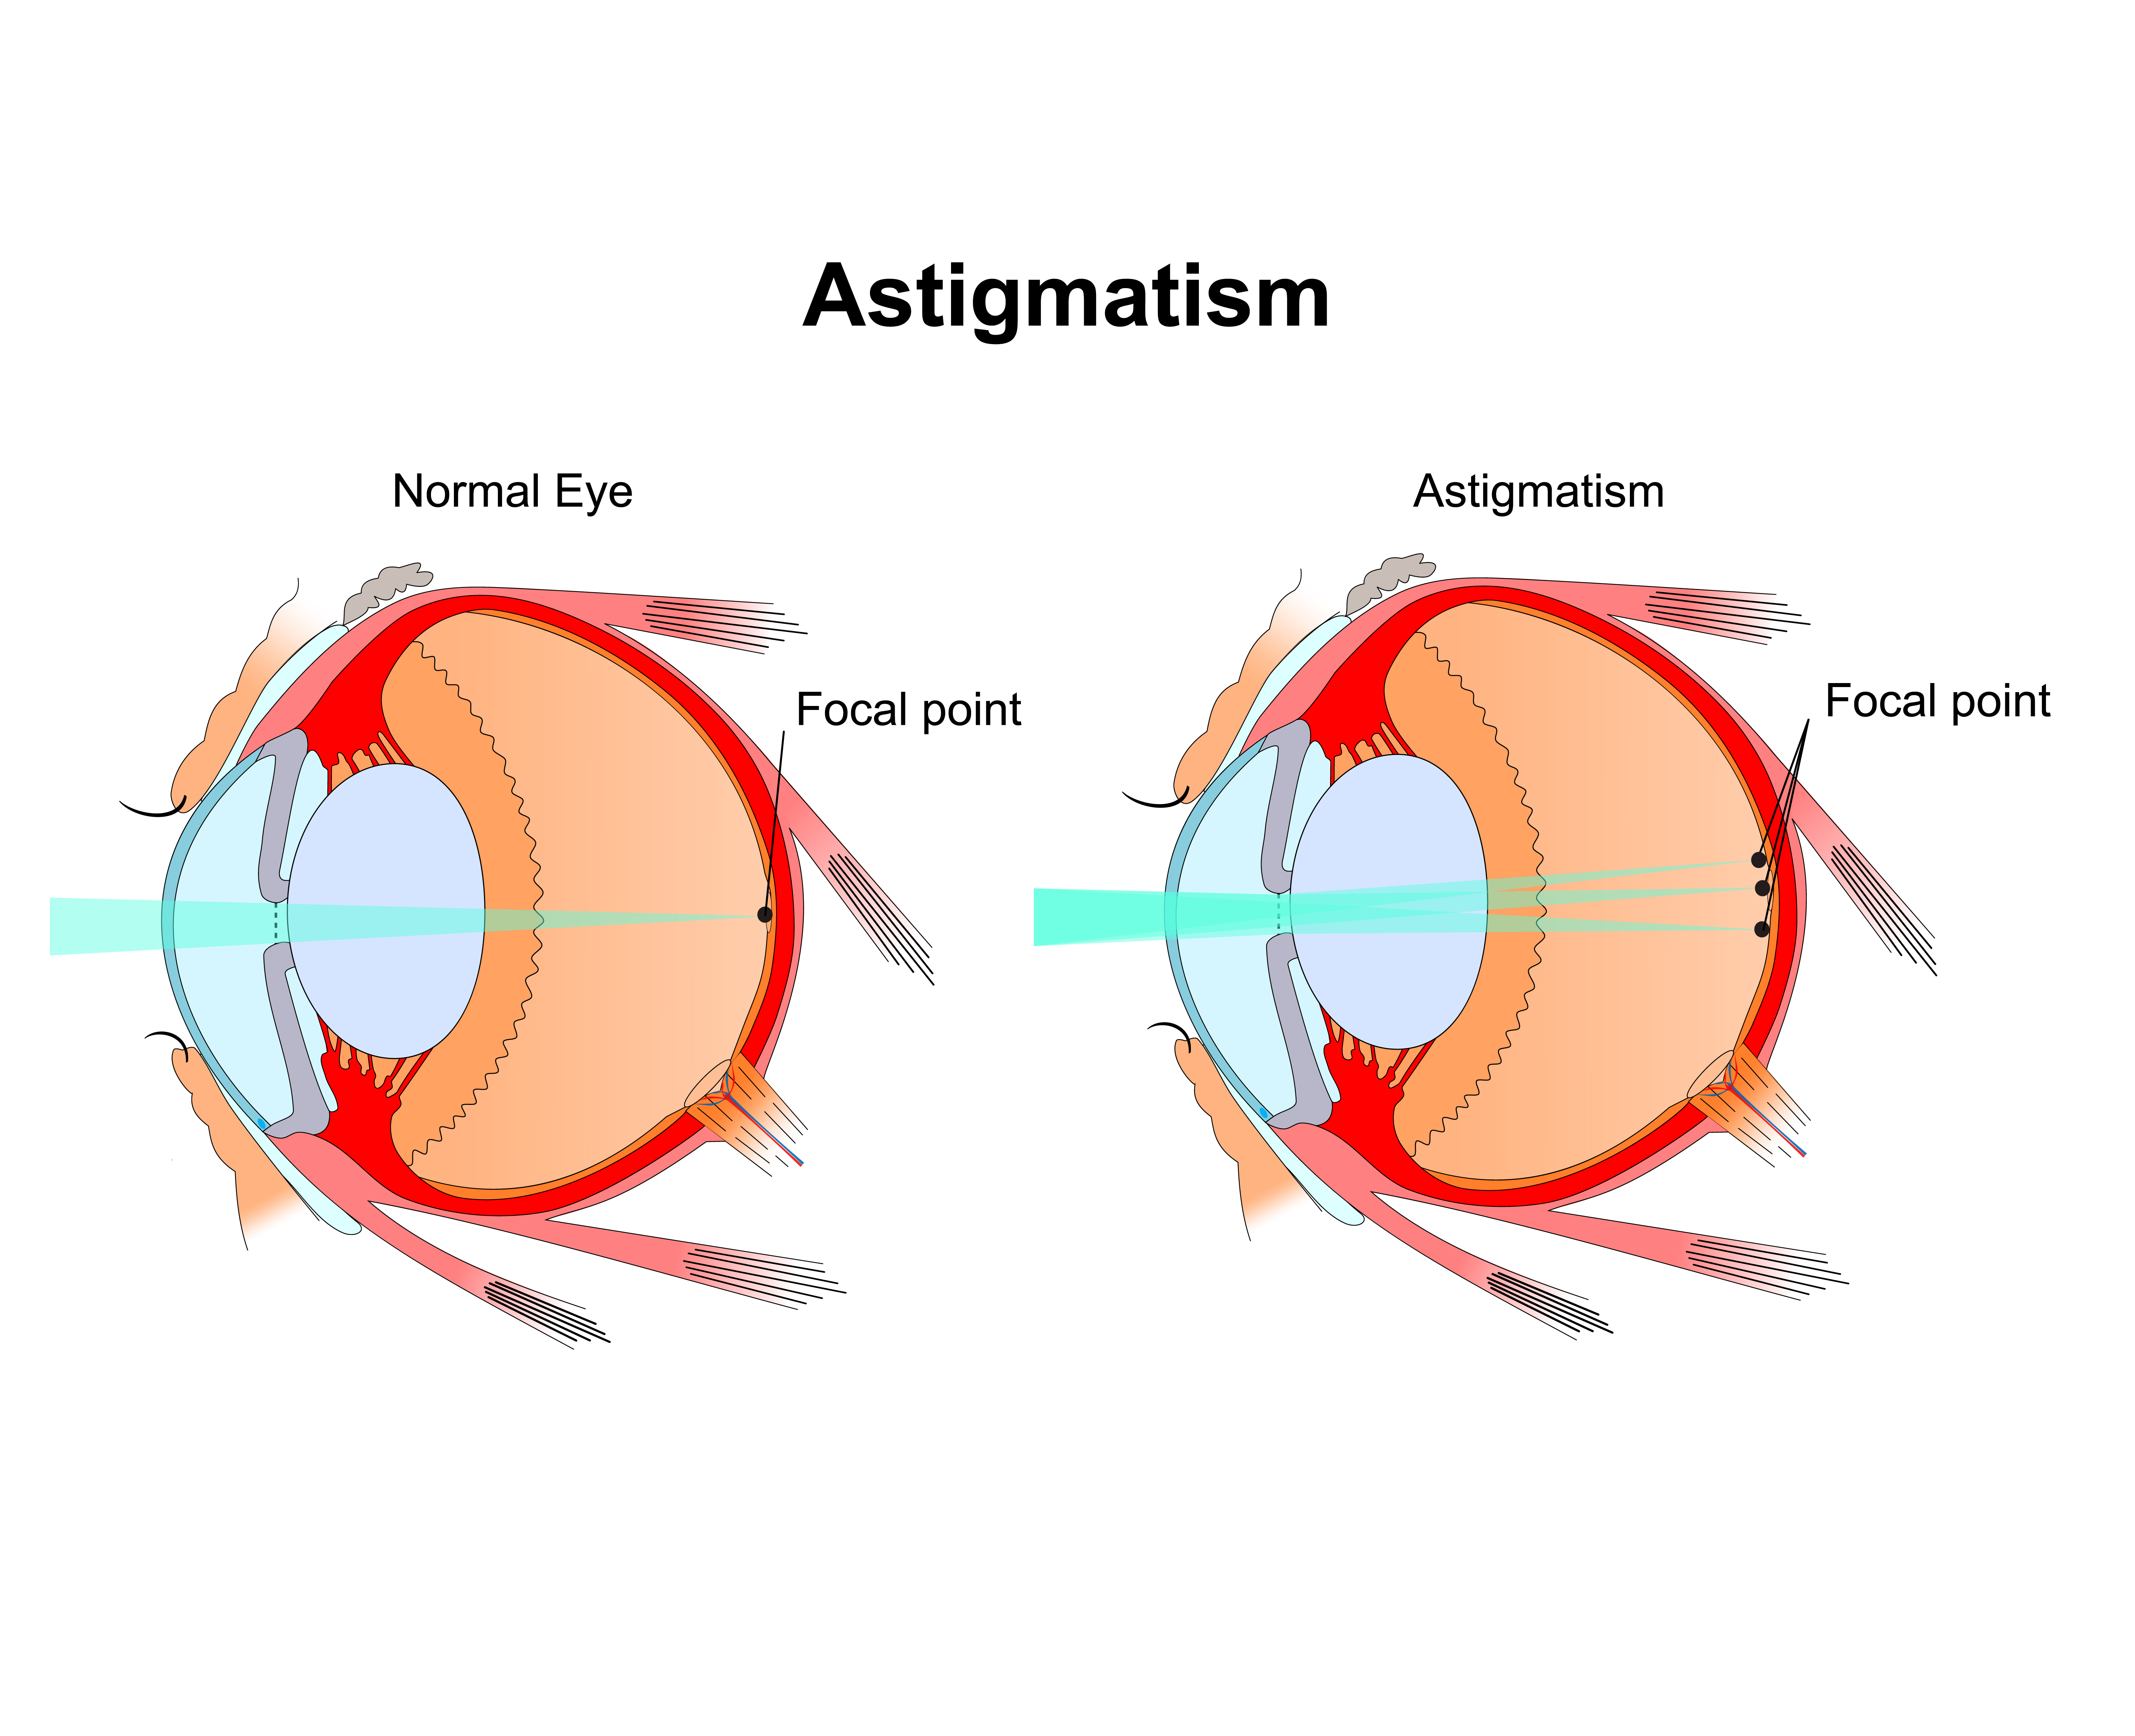 Astigmatism vs Normal Eye